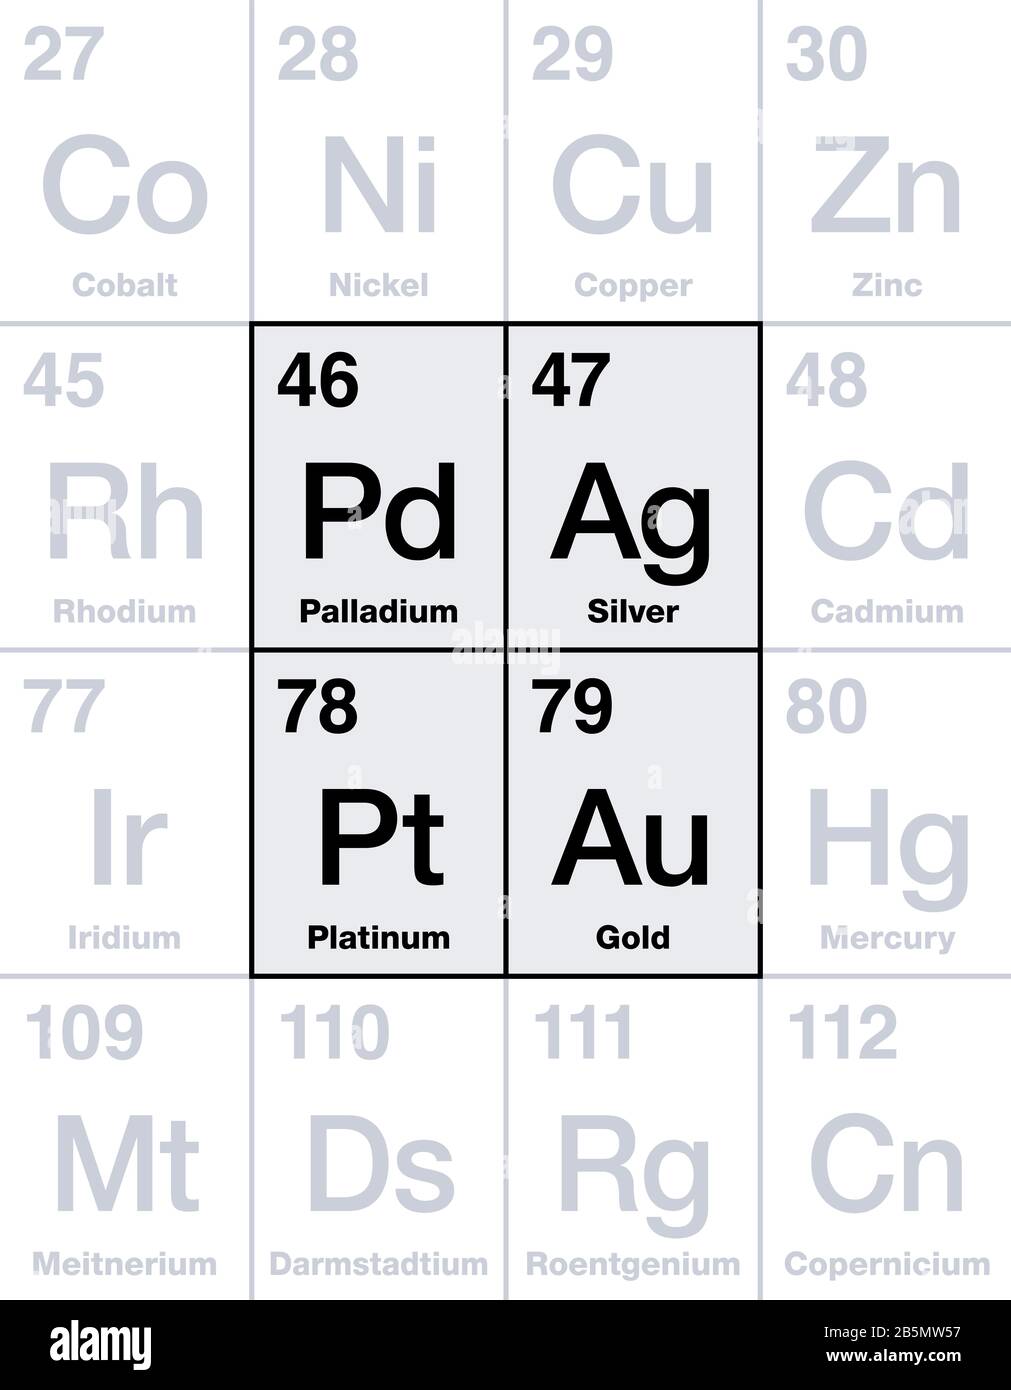 Edelmetalle im Periodensystem. Als Investition gelten Gold, Silber, Platin und Palladium, chemische Elemente mit hohem wirtschaftlichen Wert. Stockfoto